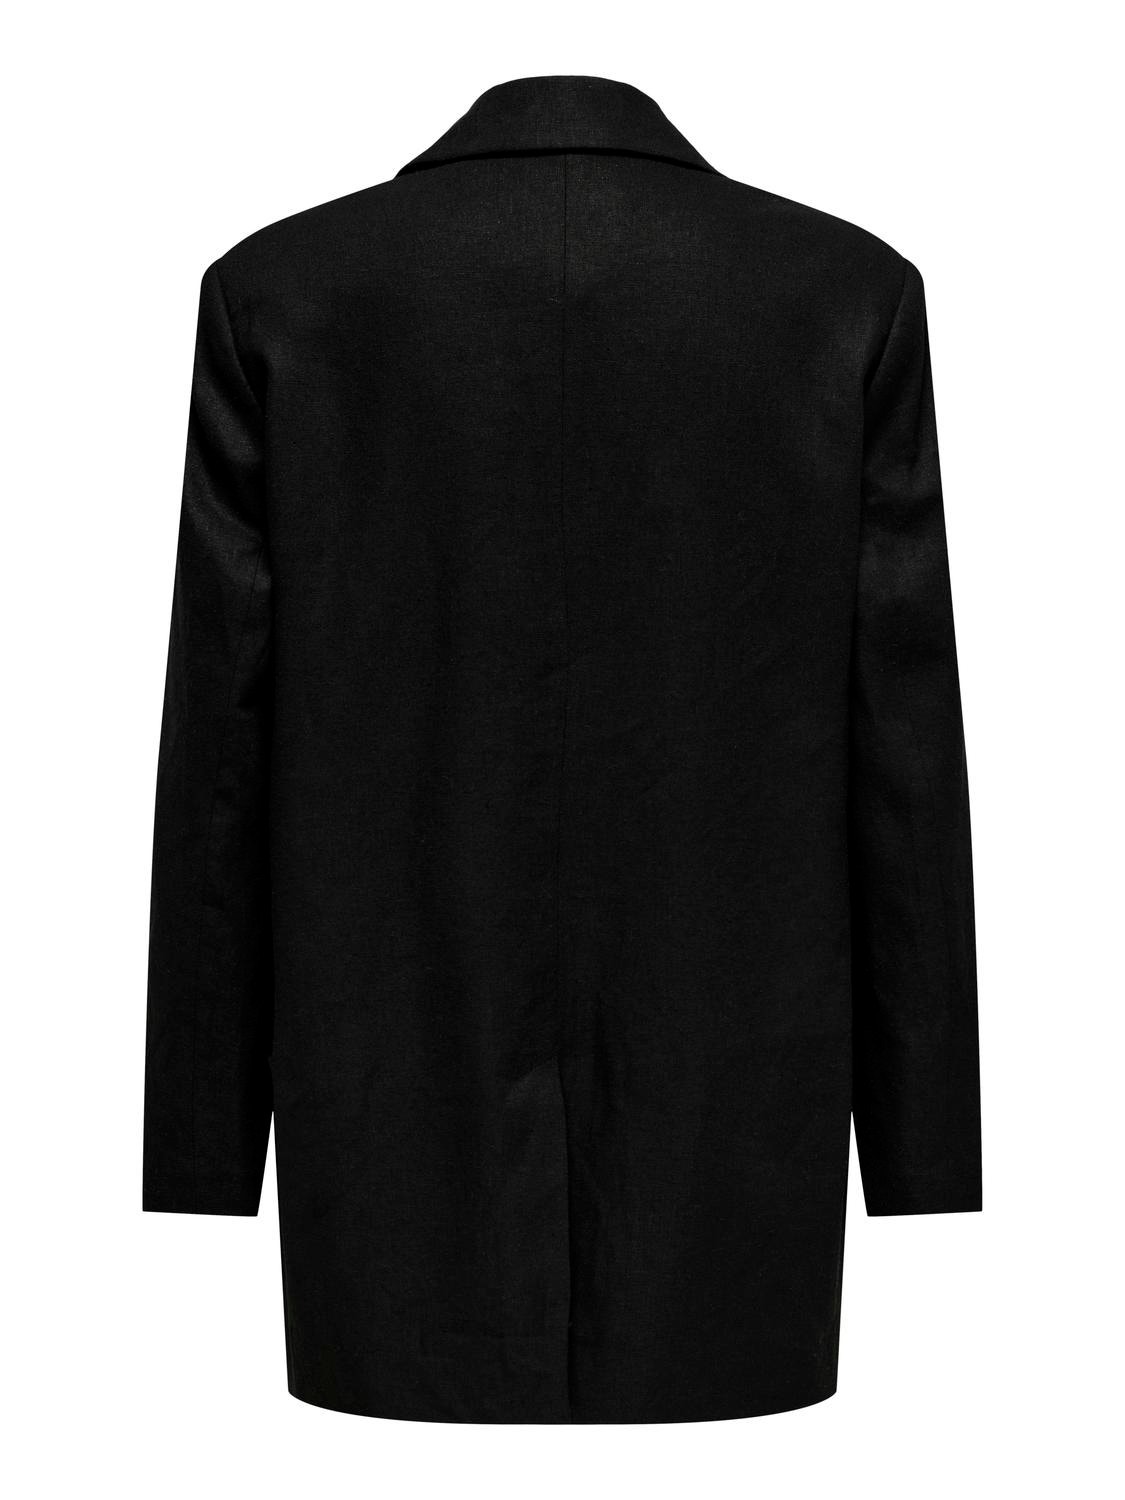 ONLY Blazers Corte oversized Cuello invertido -Black - 15290245